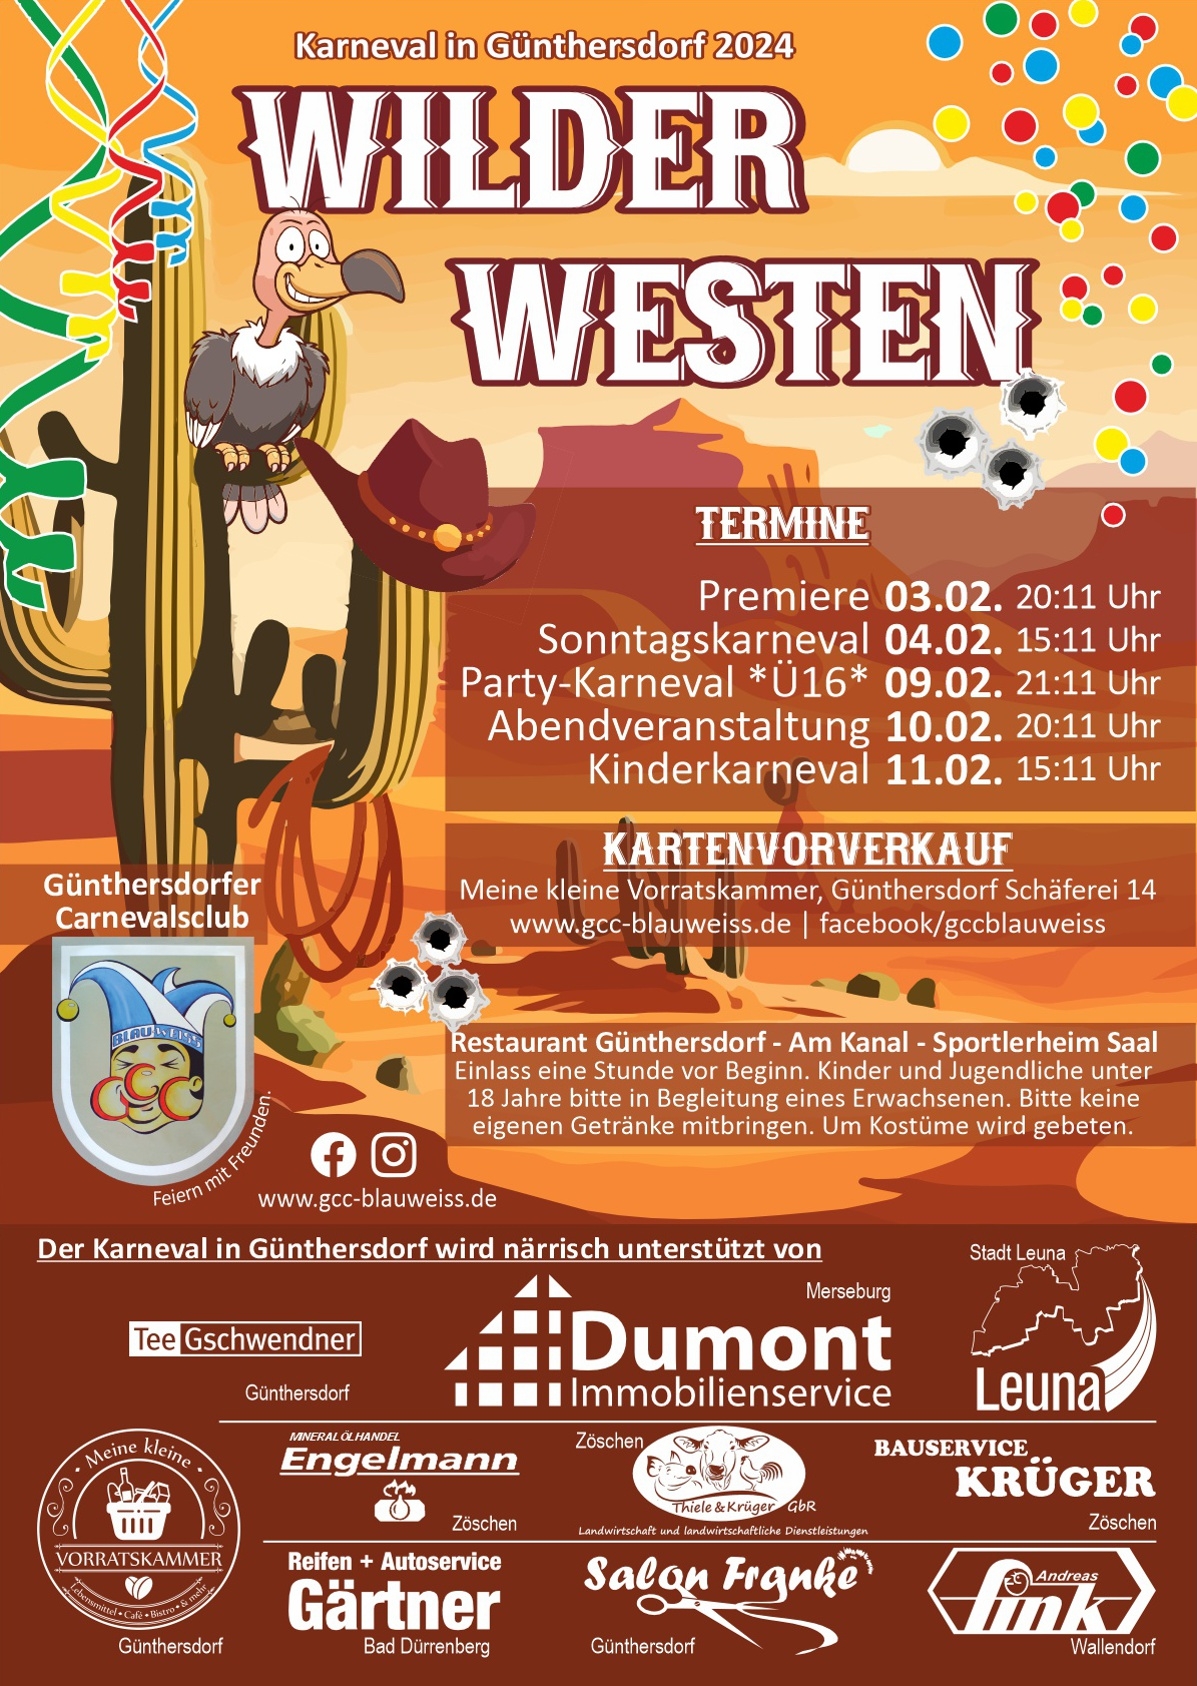 Karneval in Günthersdorf 2024 - Wilder Westen